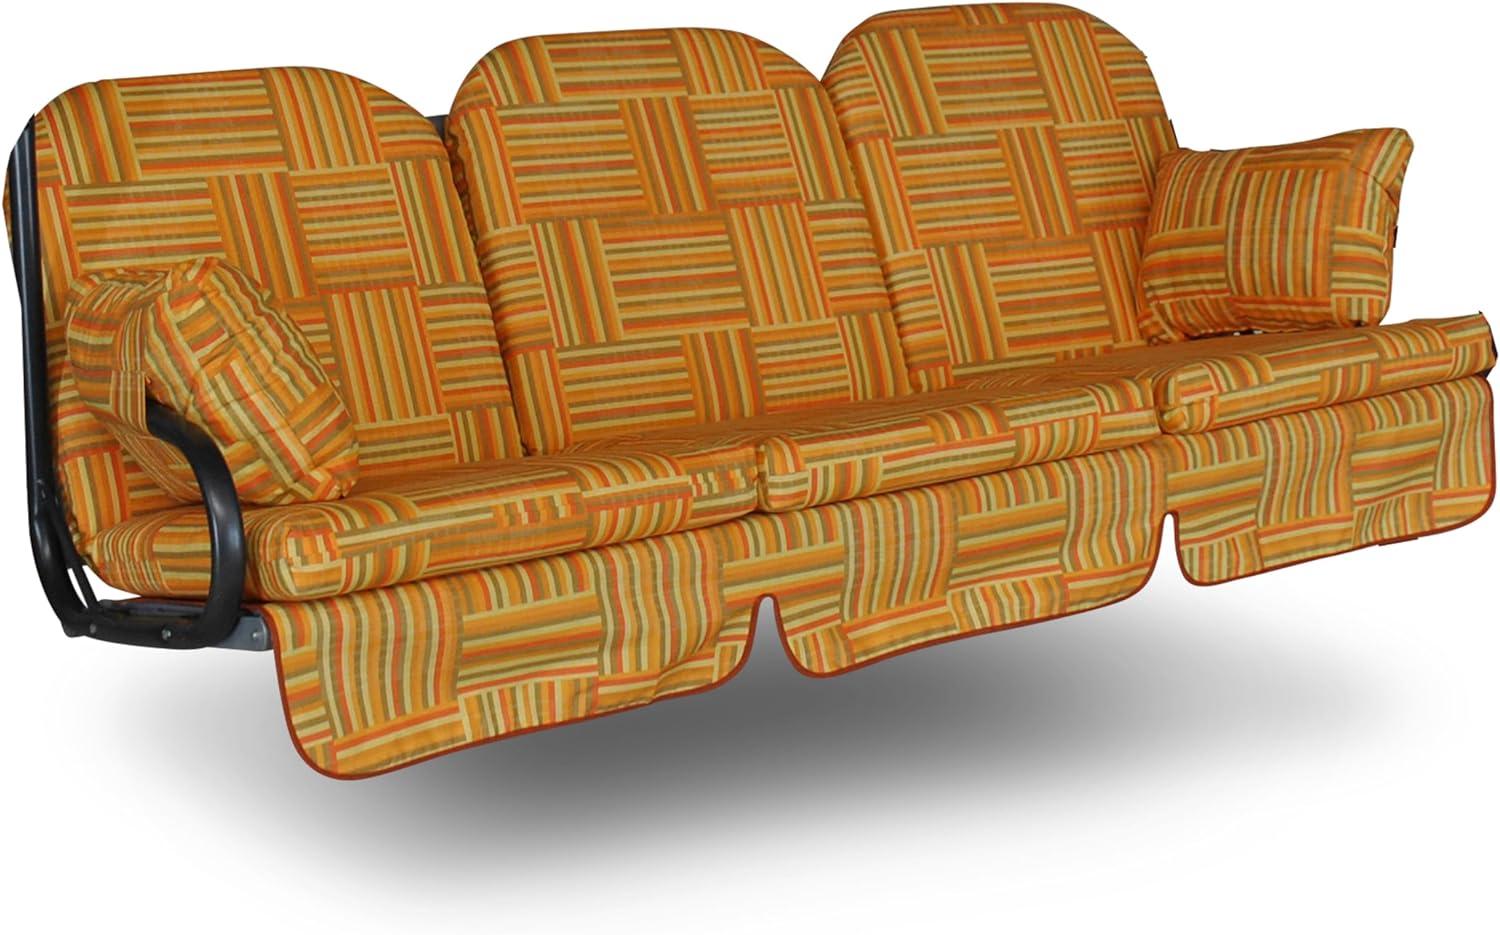 Angerer Hollywoodschaukel Auflage Deluxe passend für viele 3-Sitzer Hollywoodschaukeln - Schaukelauflage Made in Germany (Orange Gemustert) Bild 1